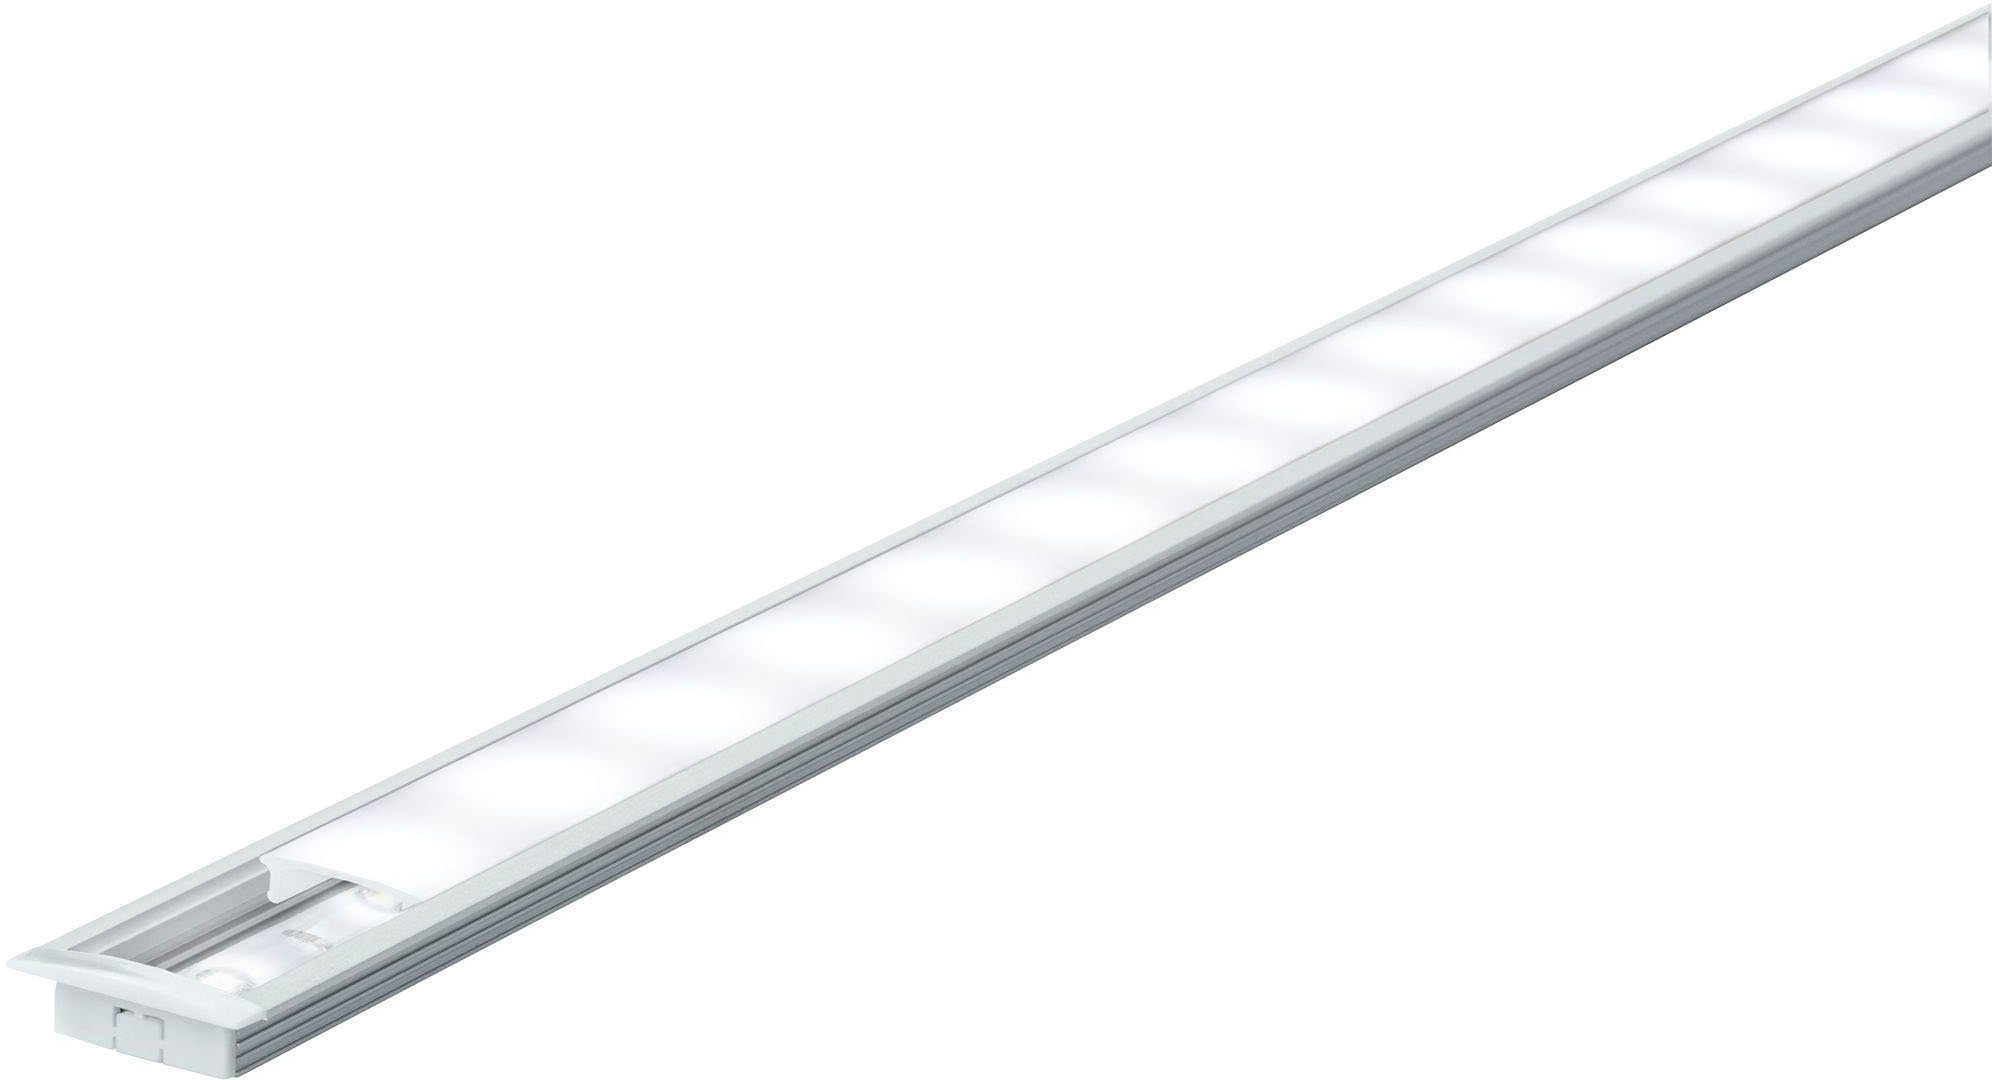 Paulmann LED-Streifen Floor Profil mit Diffusor 100cm Alu eloxiert,  Satin,Alu/Kunststoff Alu, Mit satiniertem Diffusor für gleichmäßige  Lichtverteilung | LED-Stripes